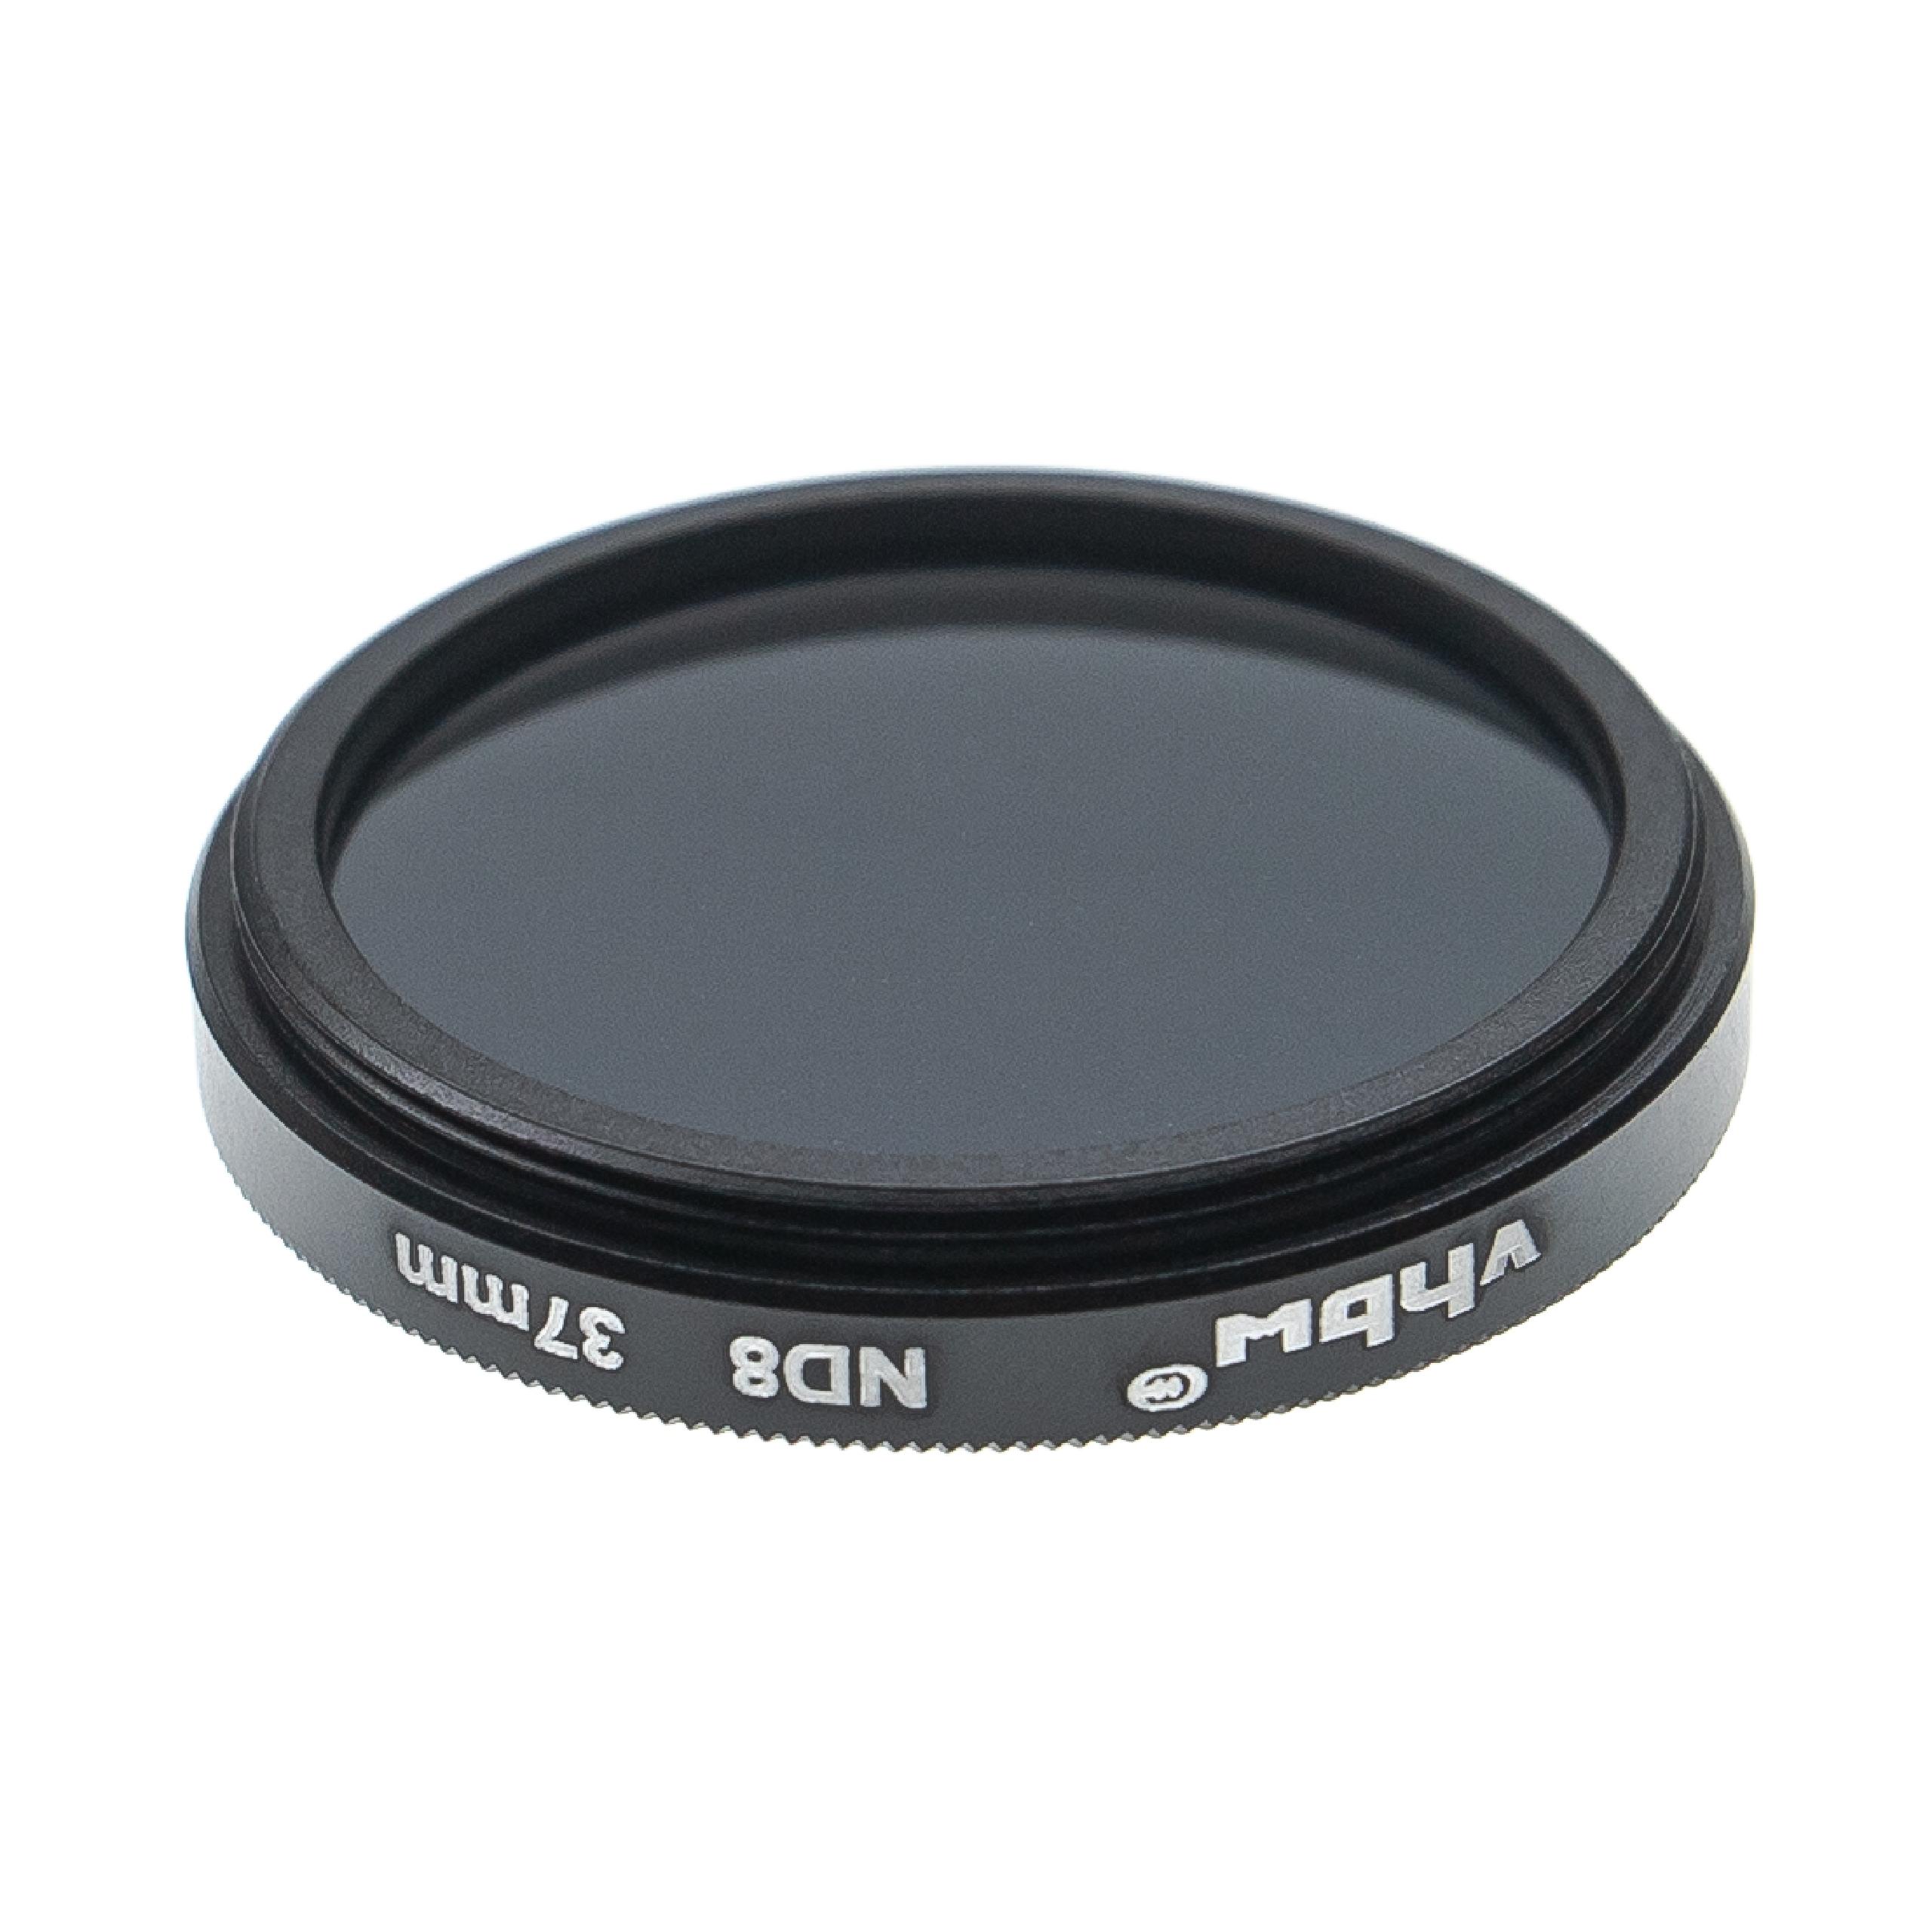 Universal ND Filter ND 8 für Kamera Objektive mit 37 mm Filtergewinde - Graufilter